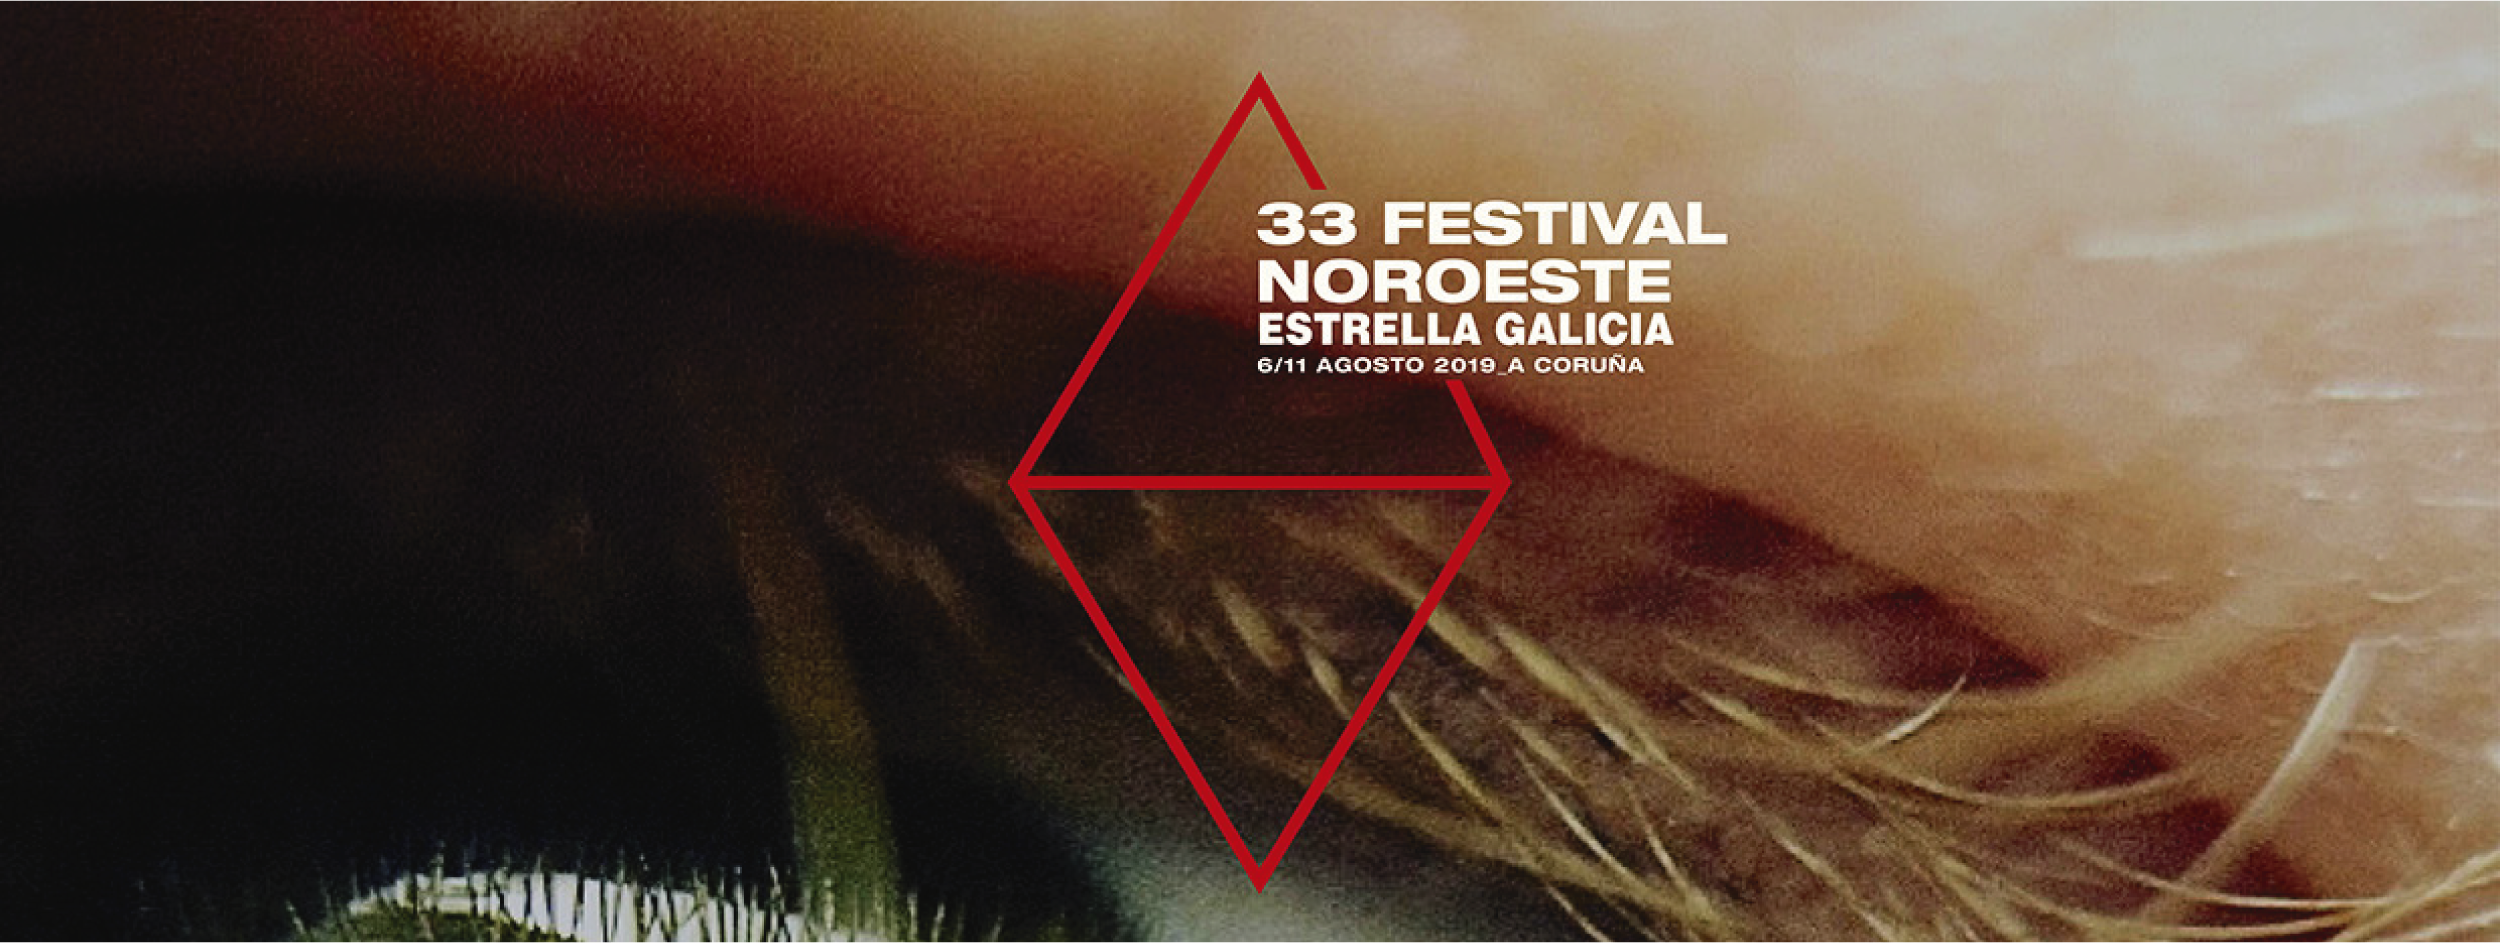 Festival Noroeste Estrella Galicia 2019